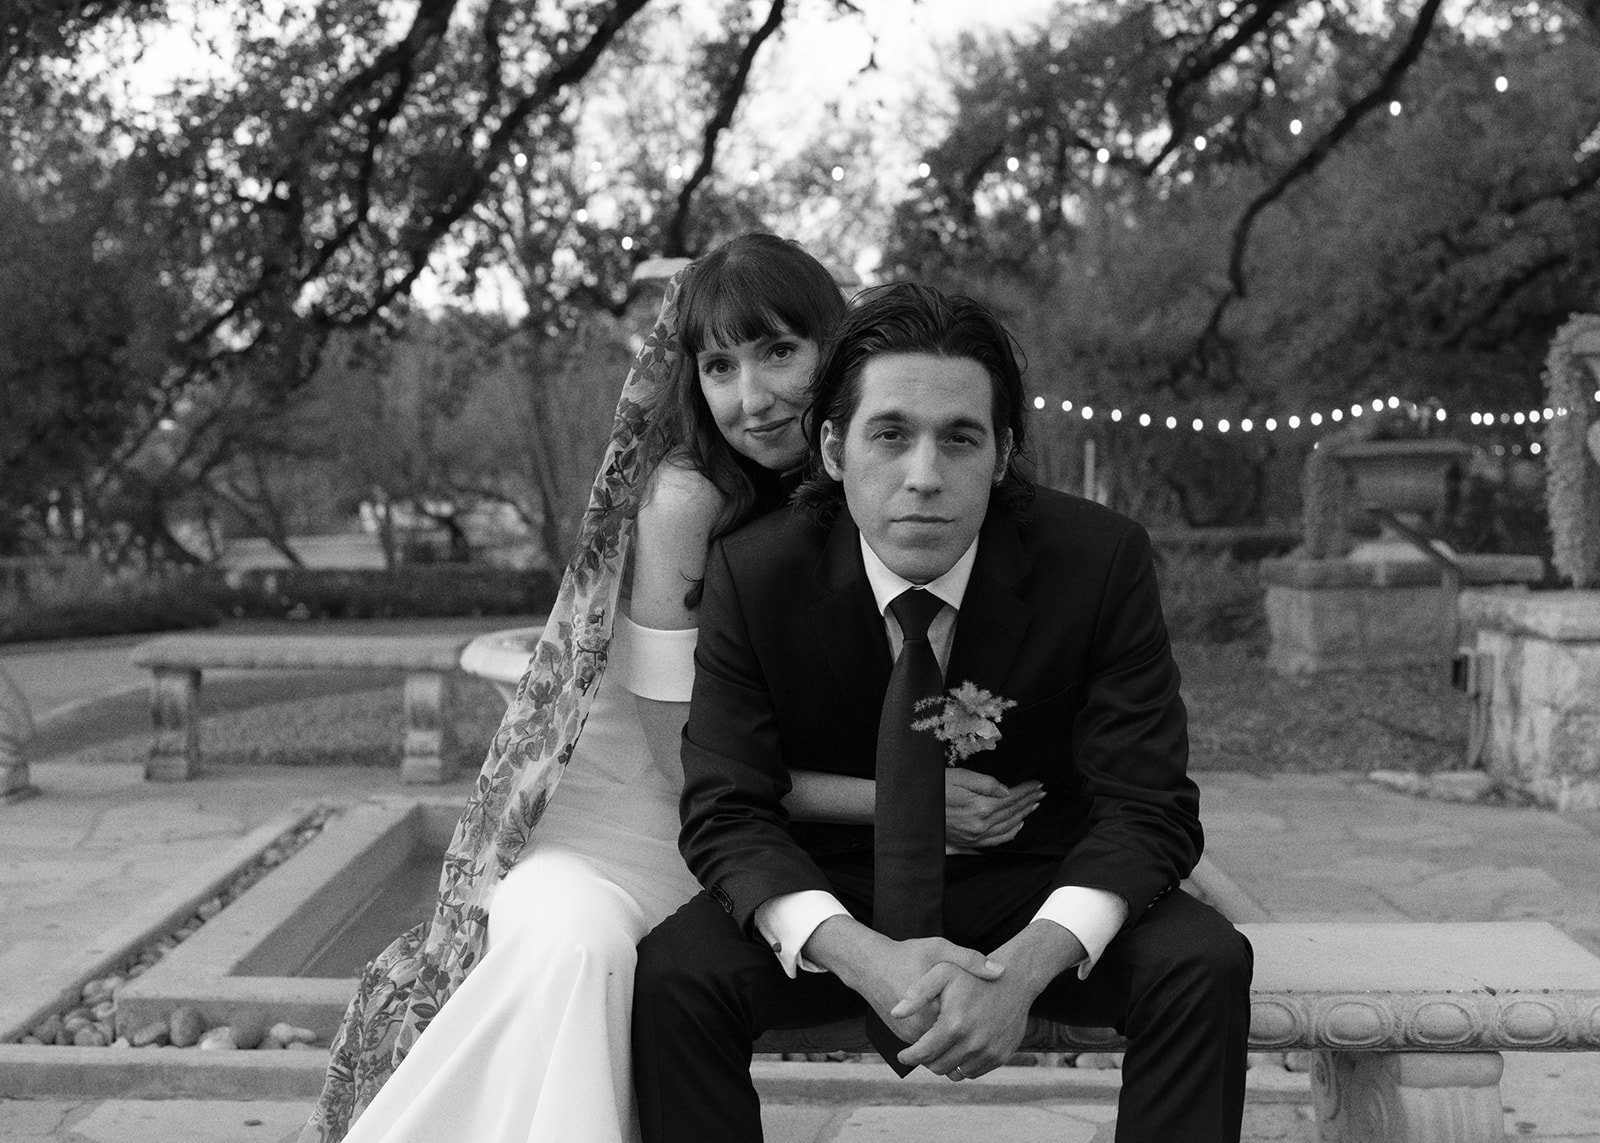 Best-Austin-Wedding-Photographers-Elopement-Film-35mm-Asheville-Santa-Barbara-Laguna-Gloria-71.jpg